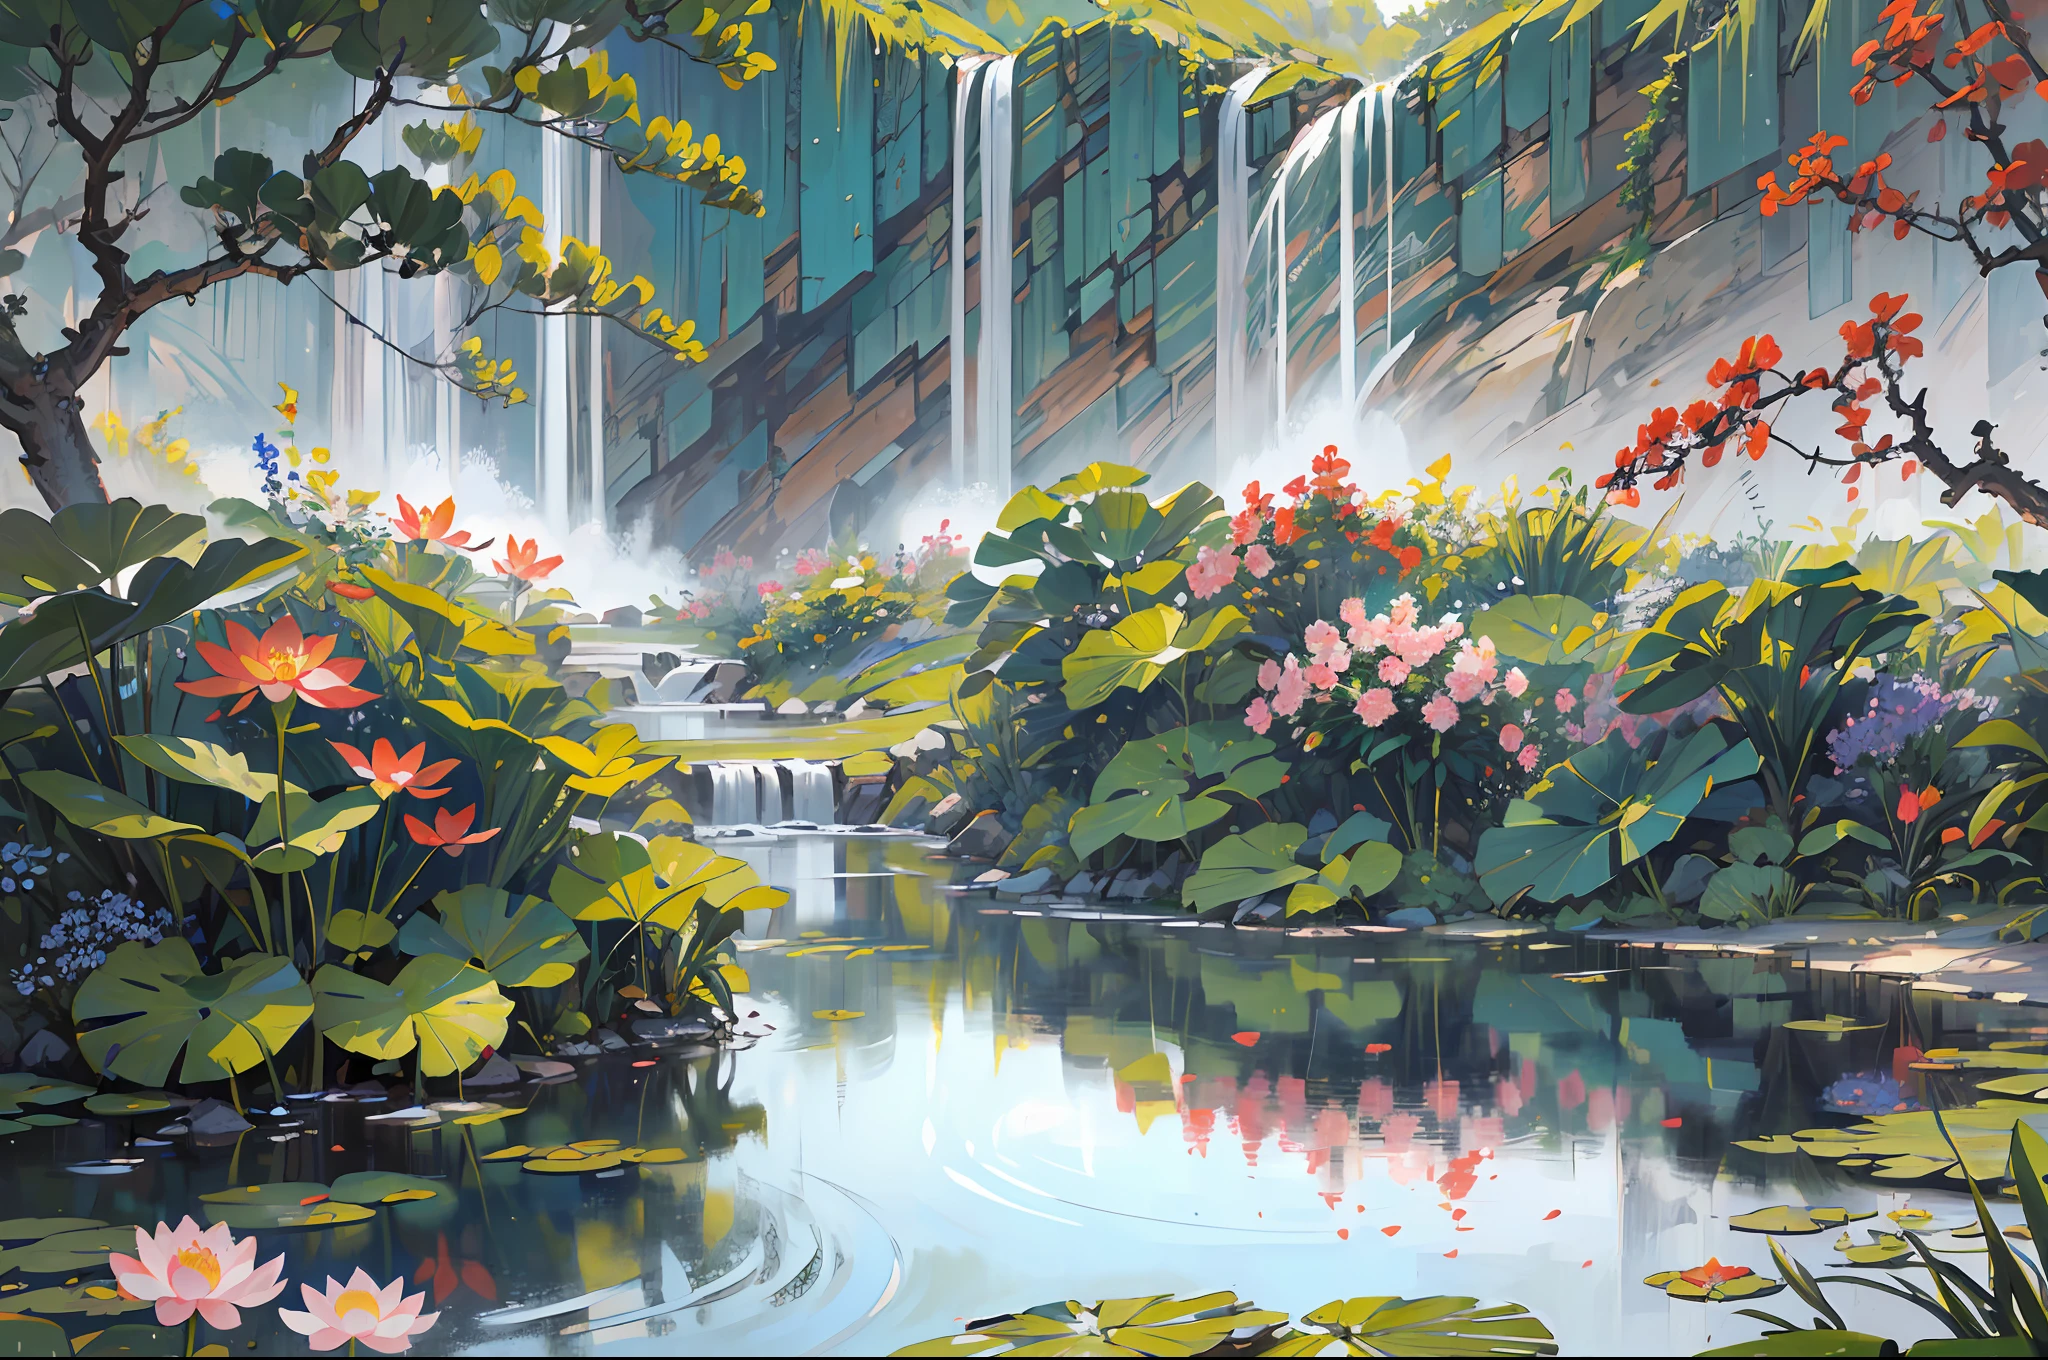 ((최고의 품질, 걸작: 1.2)), CG, 8K, 복잡한 세부 사항, 영화적 관점, (주변에 아무도 없어), (고대 중국 정원), pond filled with lotus 꽃들, 바위, 꽃들, 대나무 숲, 폭포, 숲이 우거진 지역, 시냇물을 가로지르는 작은 다리, detailed foliage and 꽃들, (빛나는 햇빛, 반짝이는 파도), 평화롭고 고요한 분위기, ((부드럽고 우아한 색상)), ((정교하게 만들어진 구성))